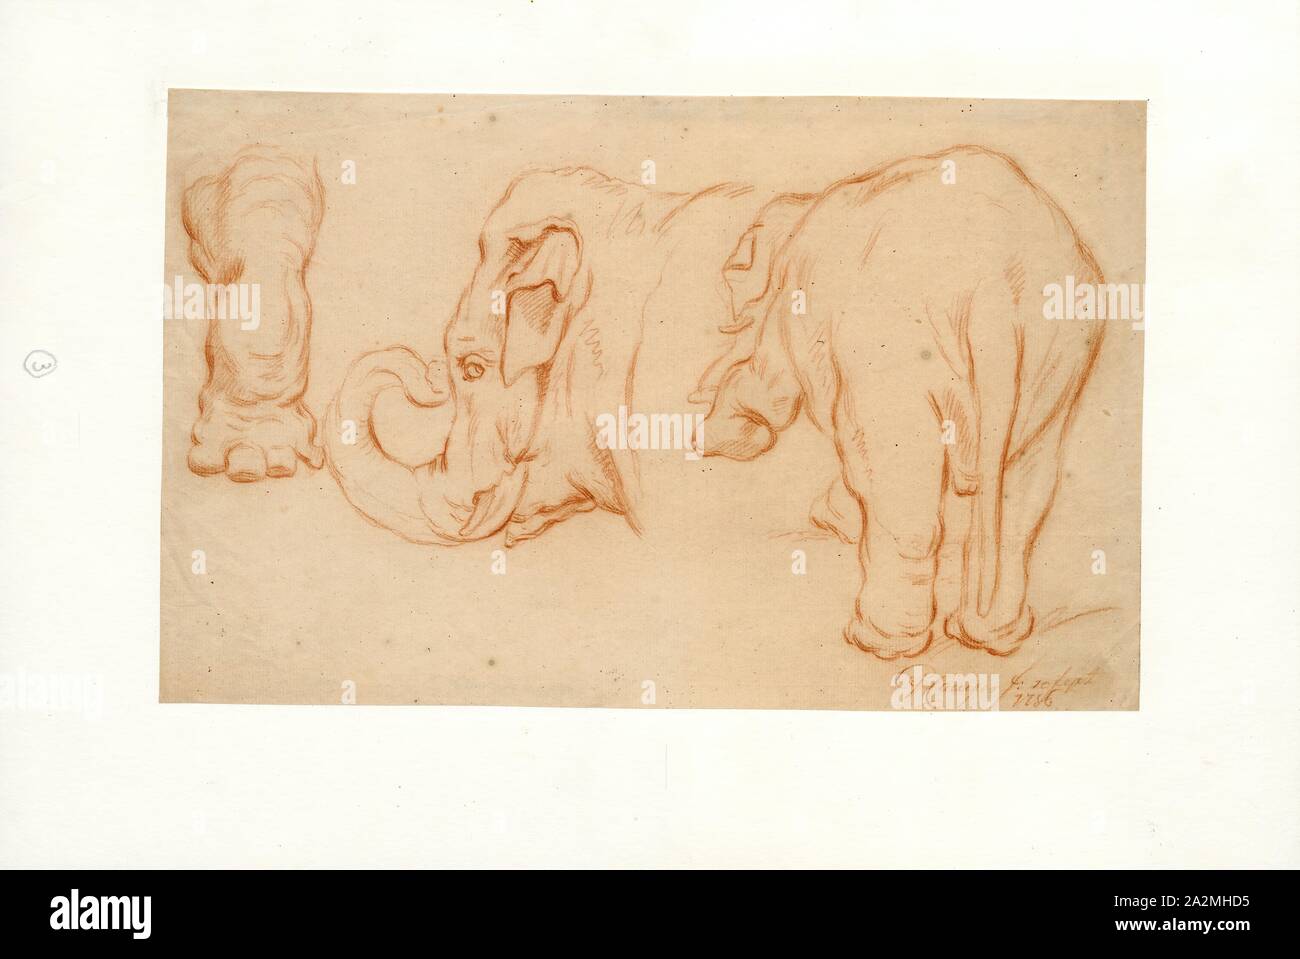 Elephas indicus, Drucken, Elephas ist einer von zwei Überlebenden Gattungen in der Familie der Elefanten, Elephantidae, mit einem überlebenden Arten, den Asiatischen Elefanten, Elephas Maximus., 1756 Stockfoto